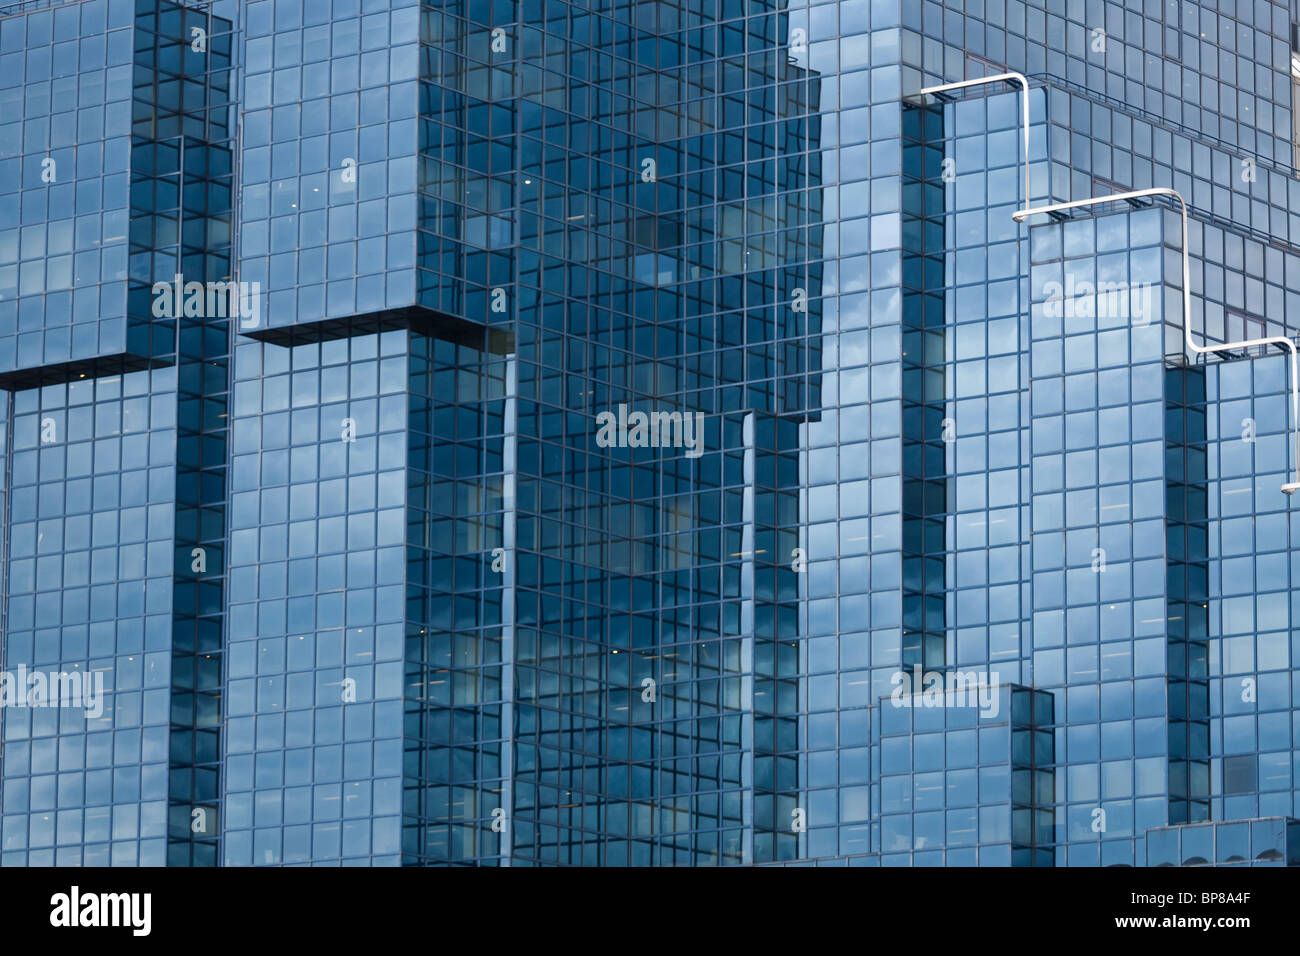 Torri di vetro di Londra. Blu di vetro riflettente e un array ripetitive di Windows Form la facciata di questo imponente edificio londinese Foto Stock